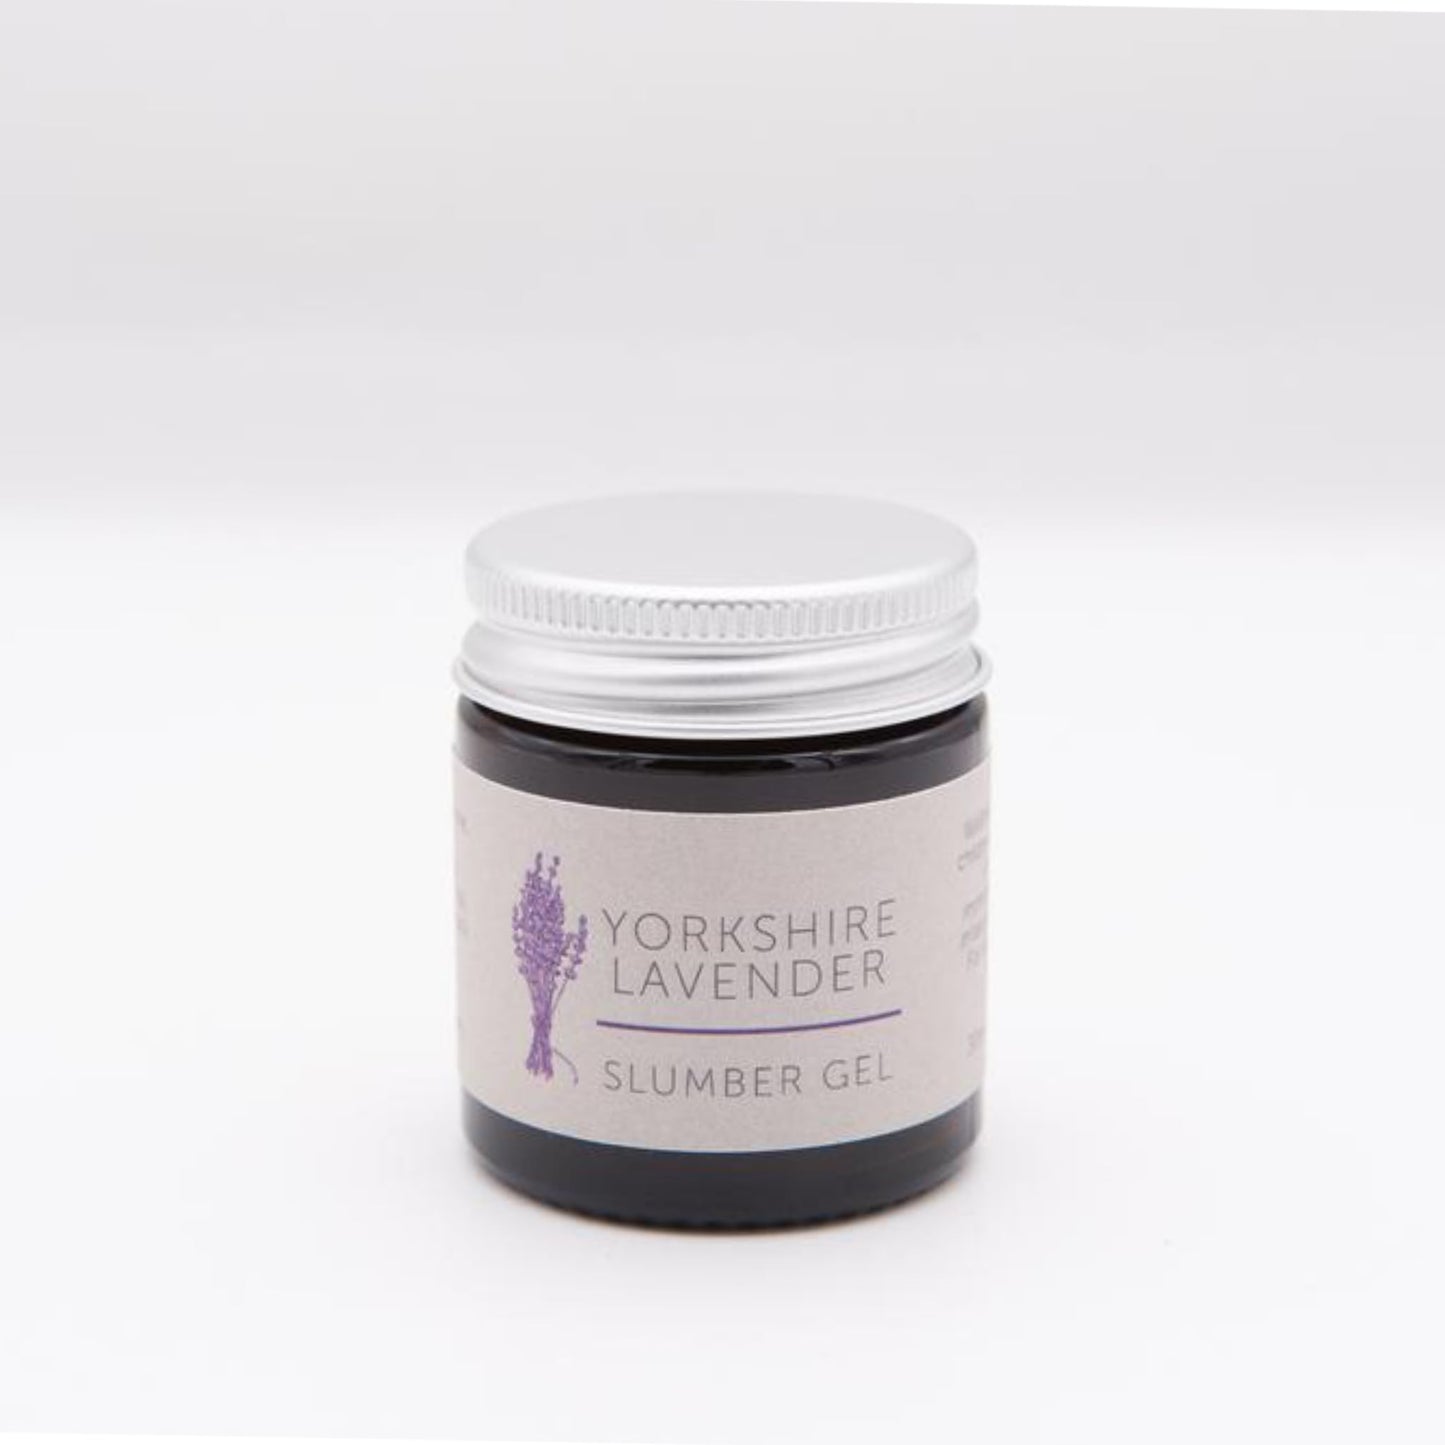 Yorkshire Lavender Slumber Gel - The Great Yorkshire Shop